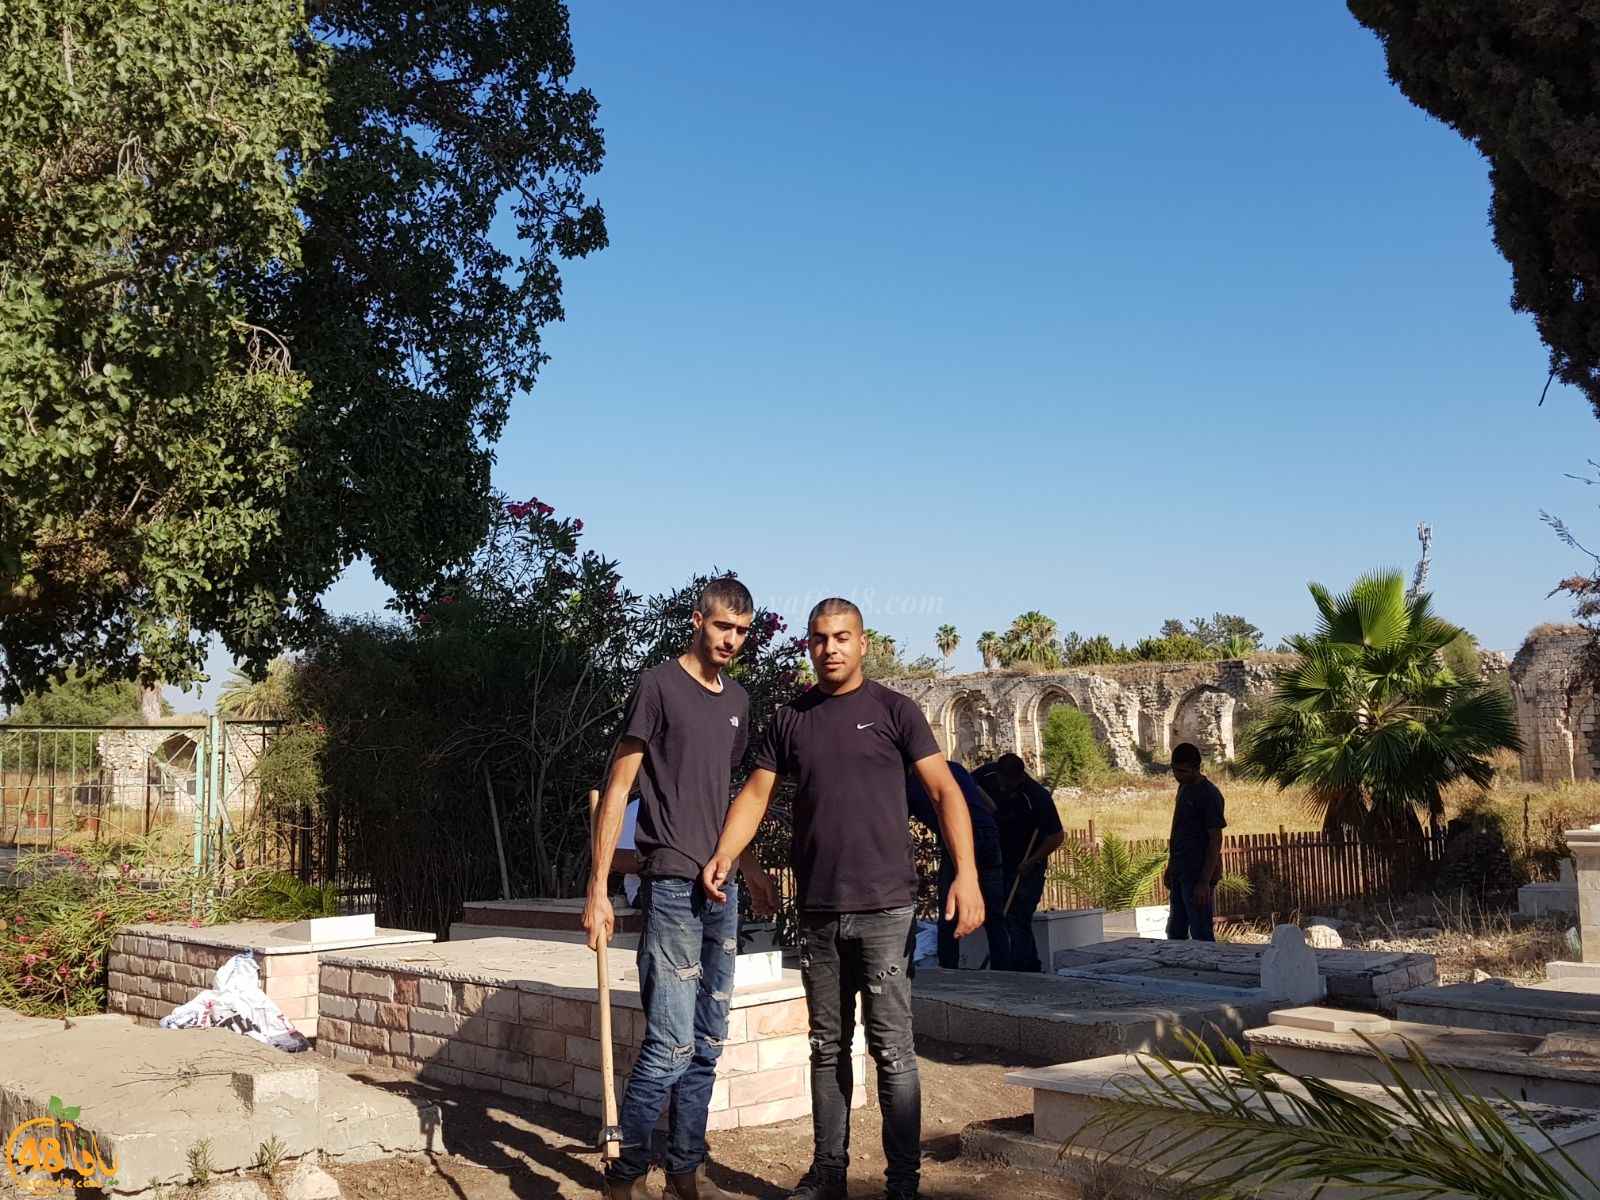   بالصور: شباب آل أبو صويص وآل الشمالي في حملة لتنظيف مقبرة النبي صالح بالرملة